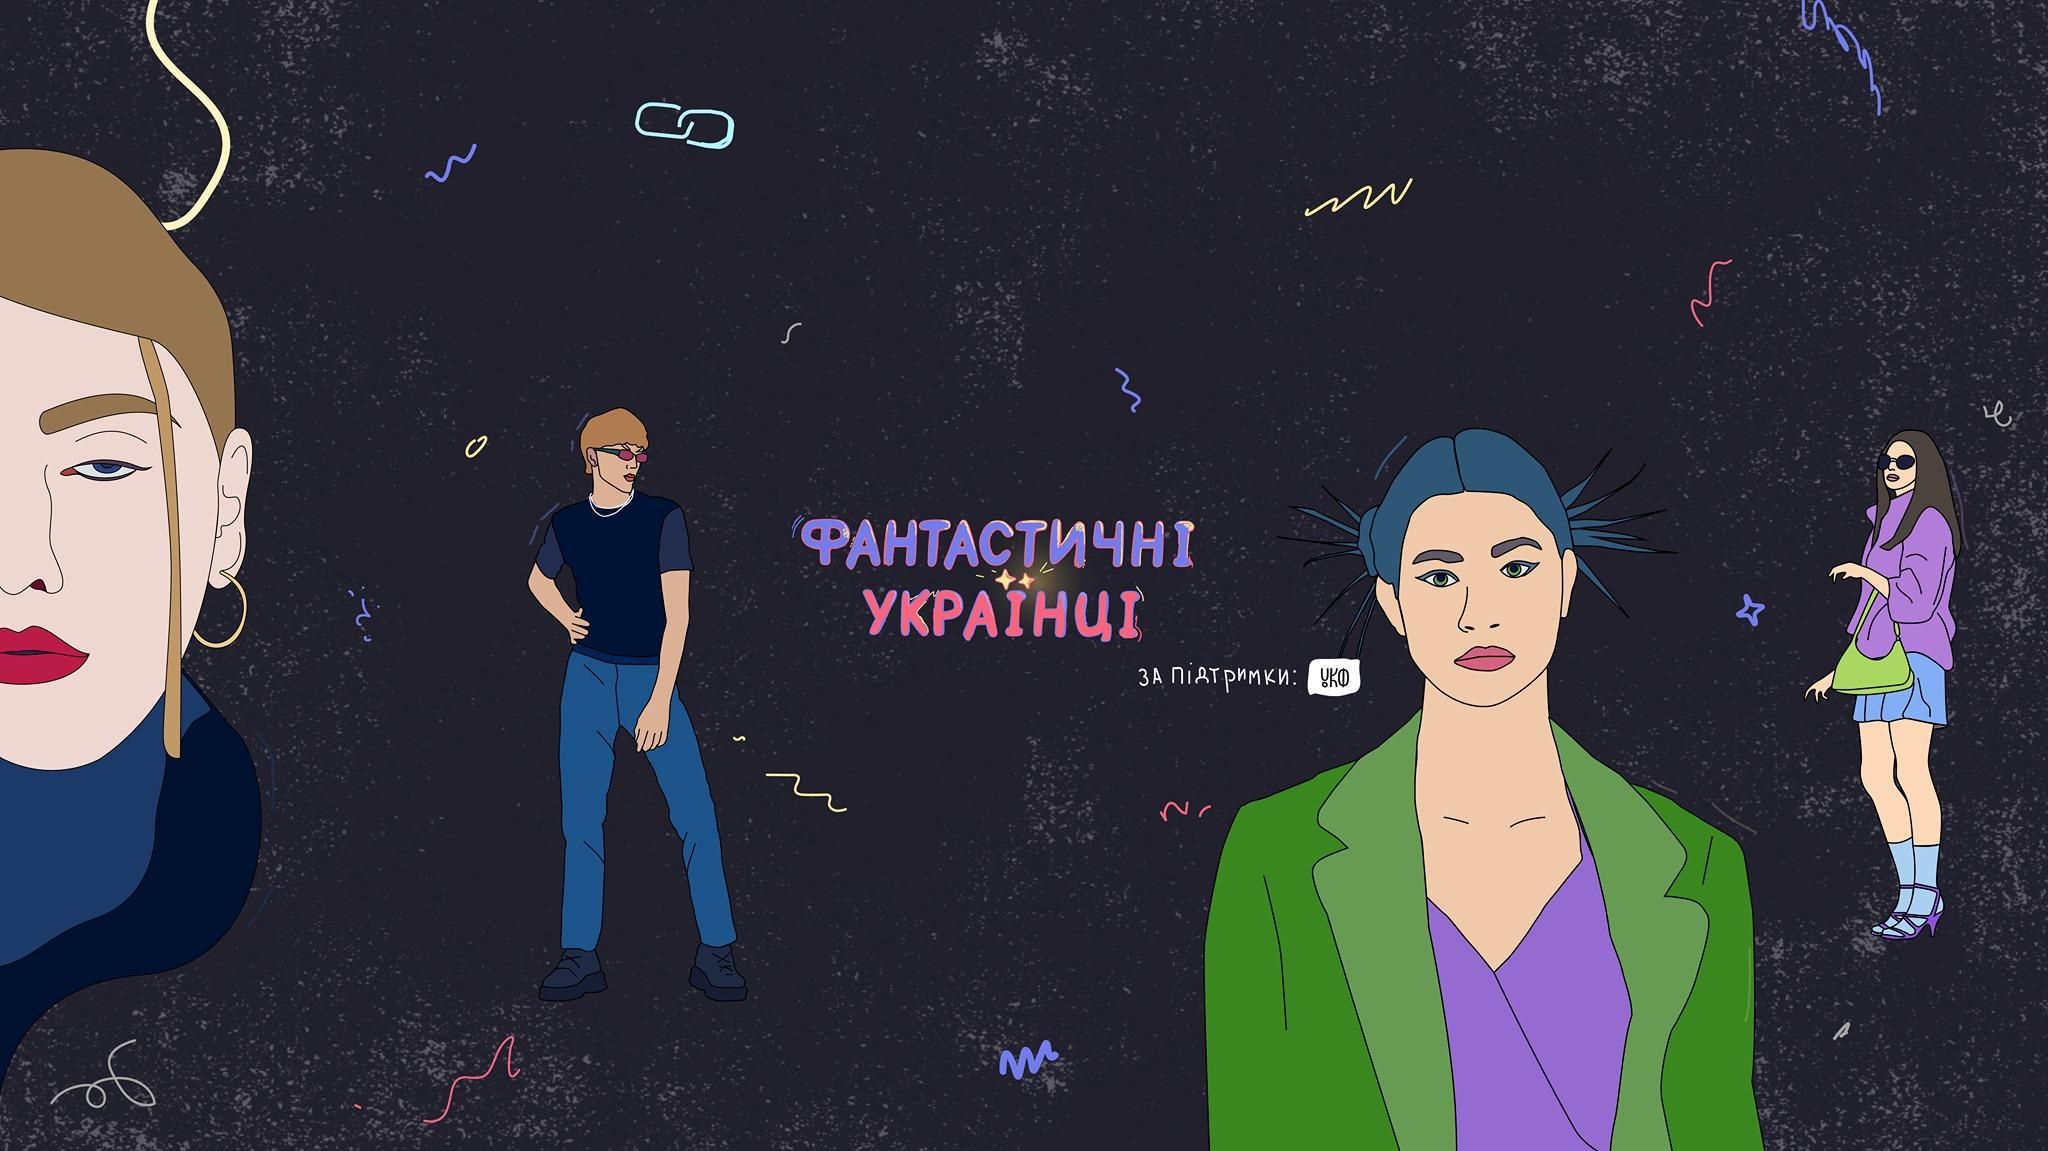 "Фантастичні українці": на екрани виходить унікальний серіал про моду й танці в Україні - Showbiz